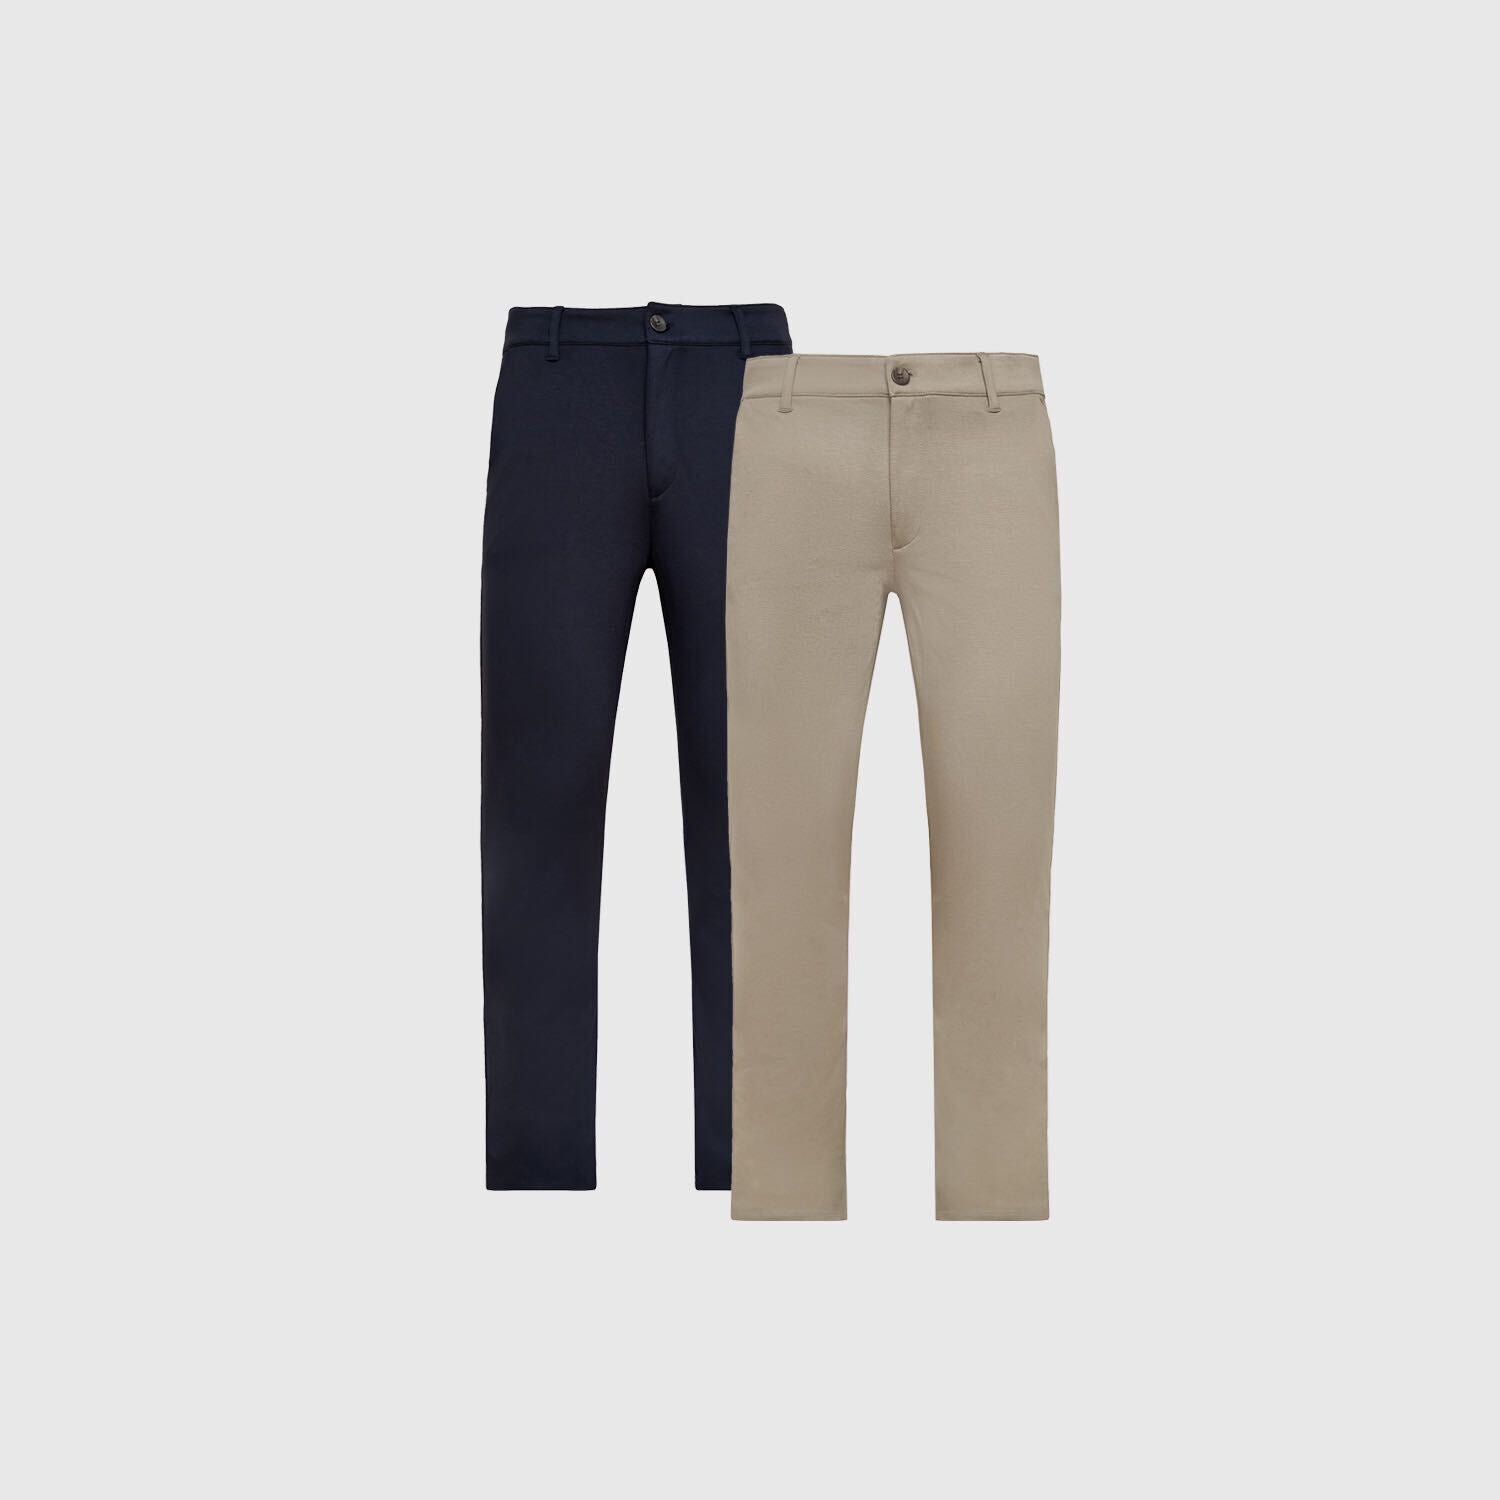 Navy and Khaki Chino Pants 2-Pack